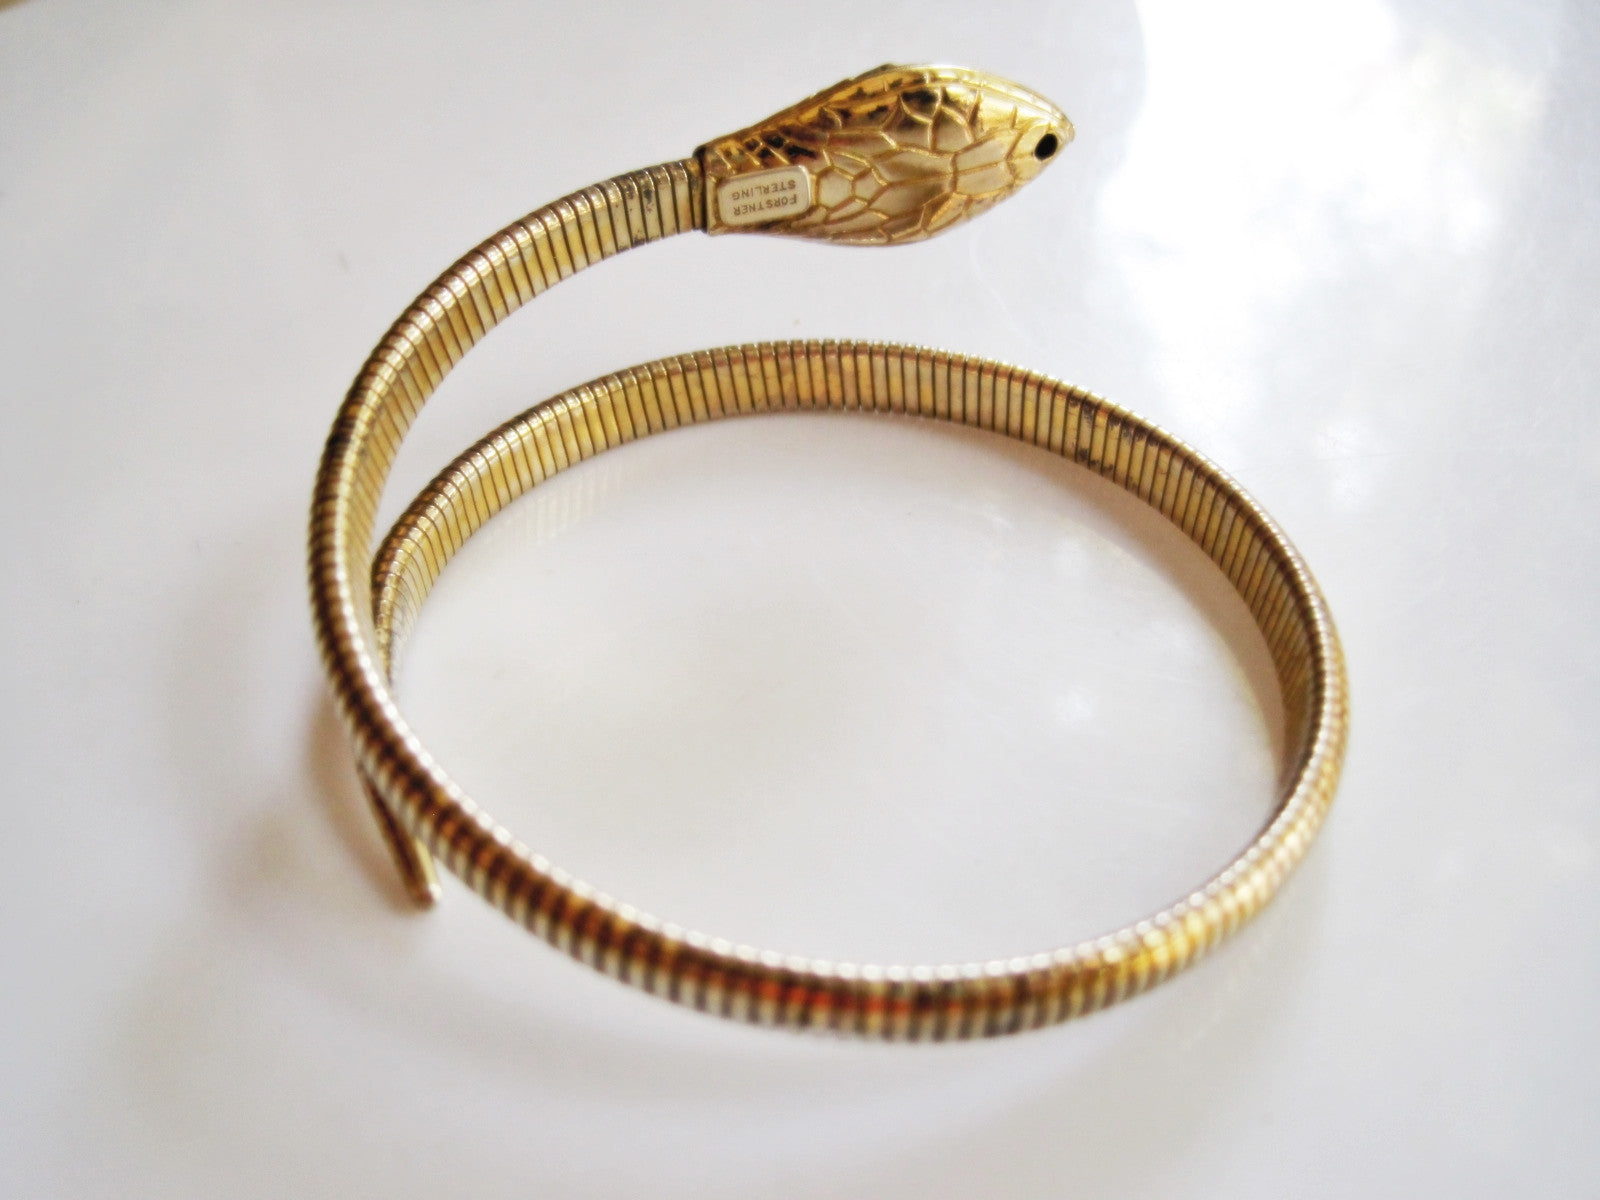 Vintage Snake Chain 925 Sterling Silver Bracelet